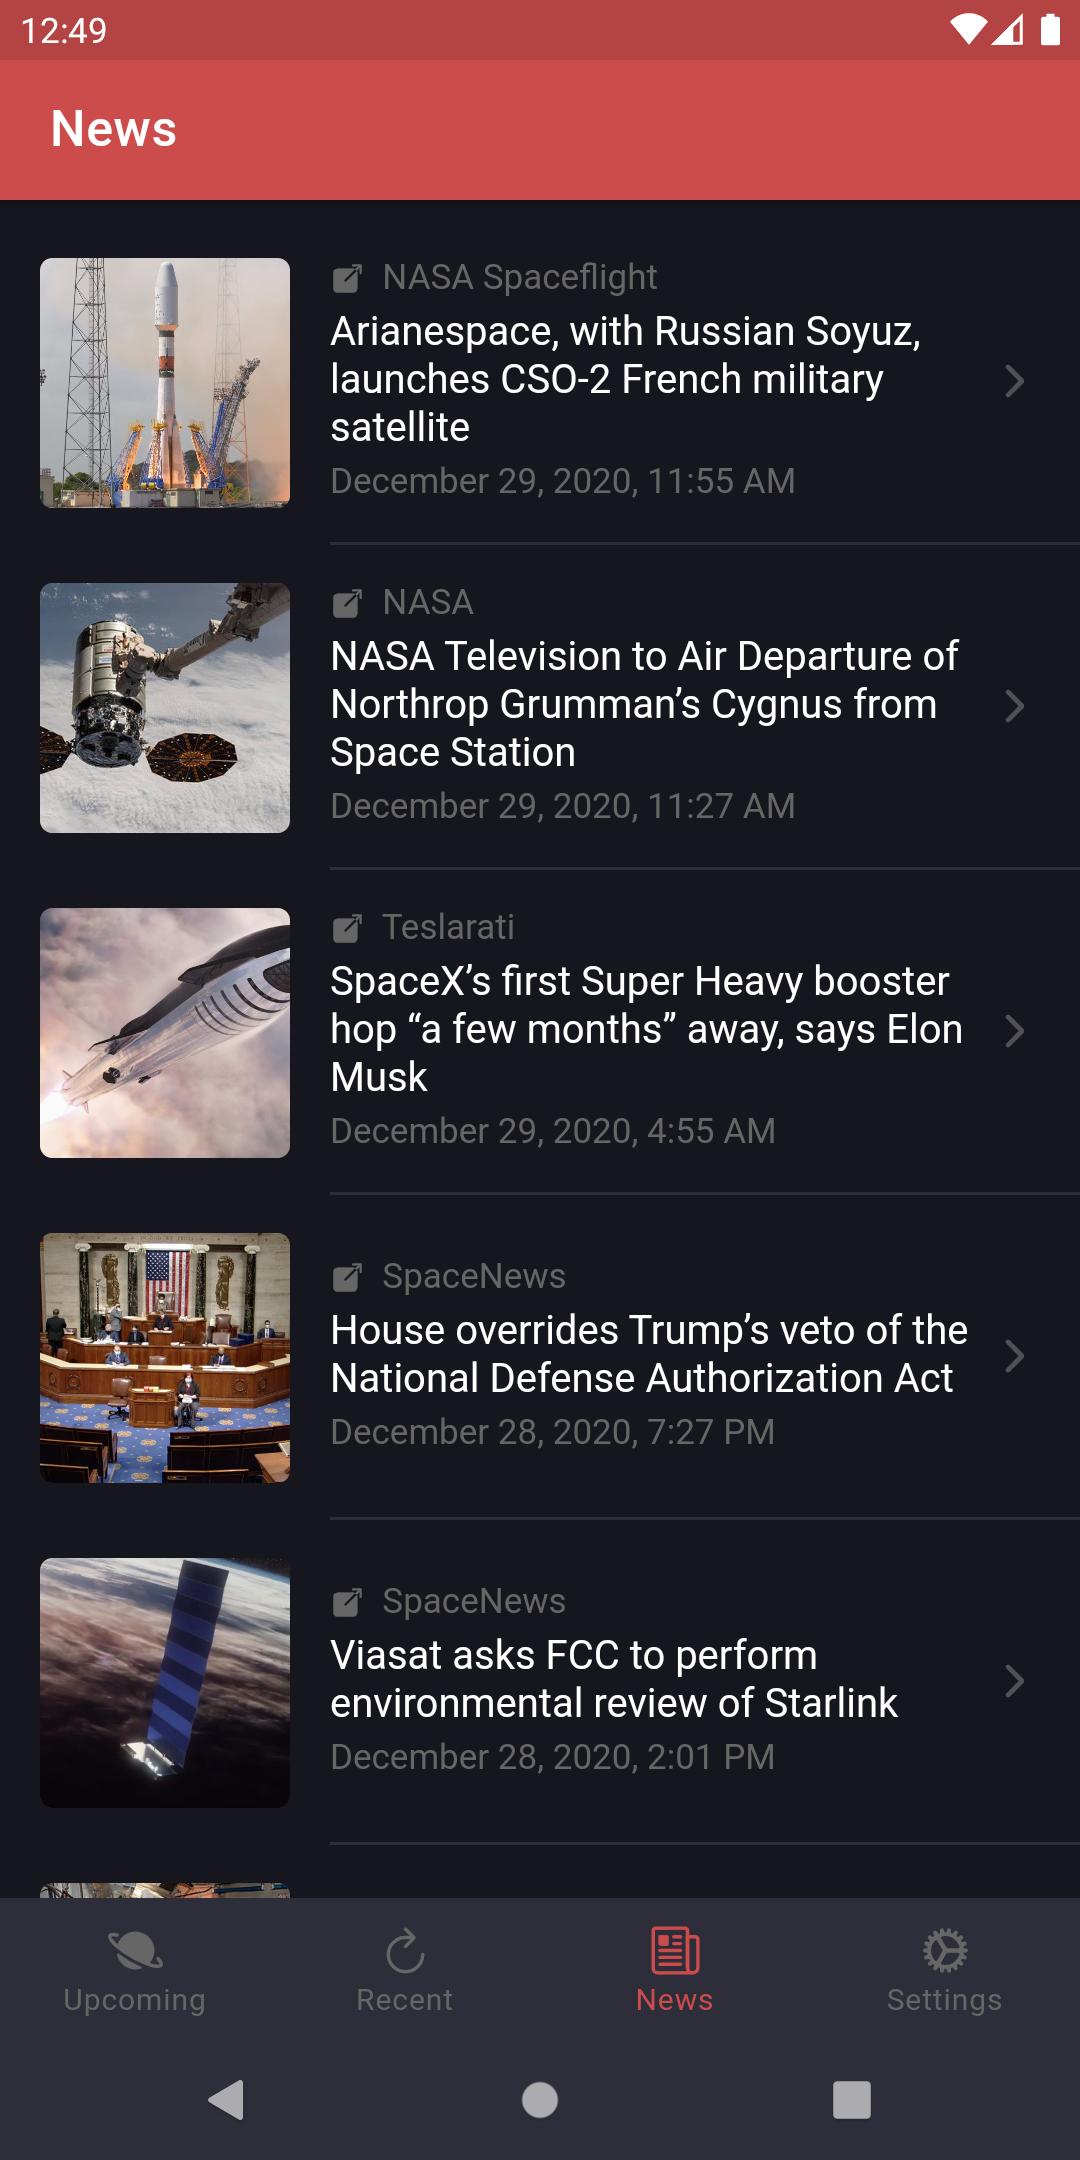 Rocket Watchr - SpaceX, NASA, etc. launch schedule